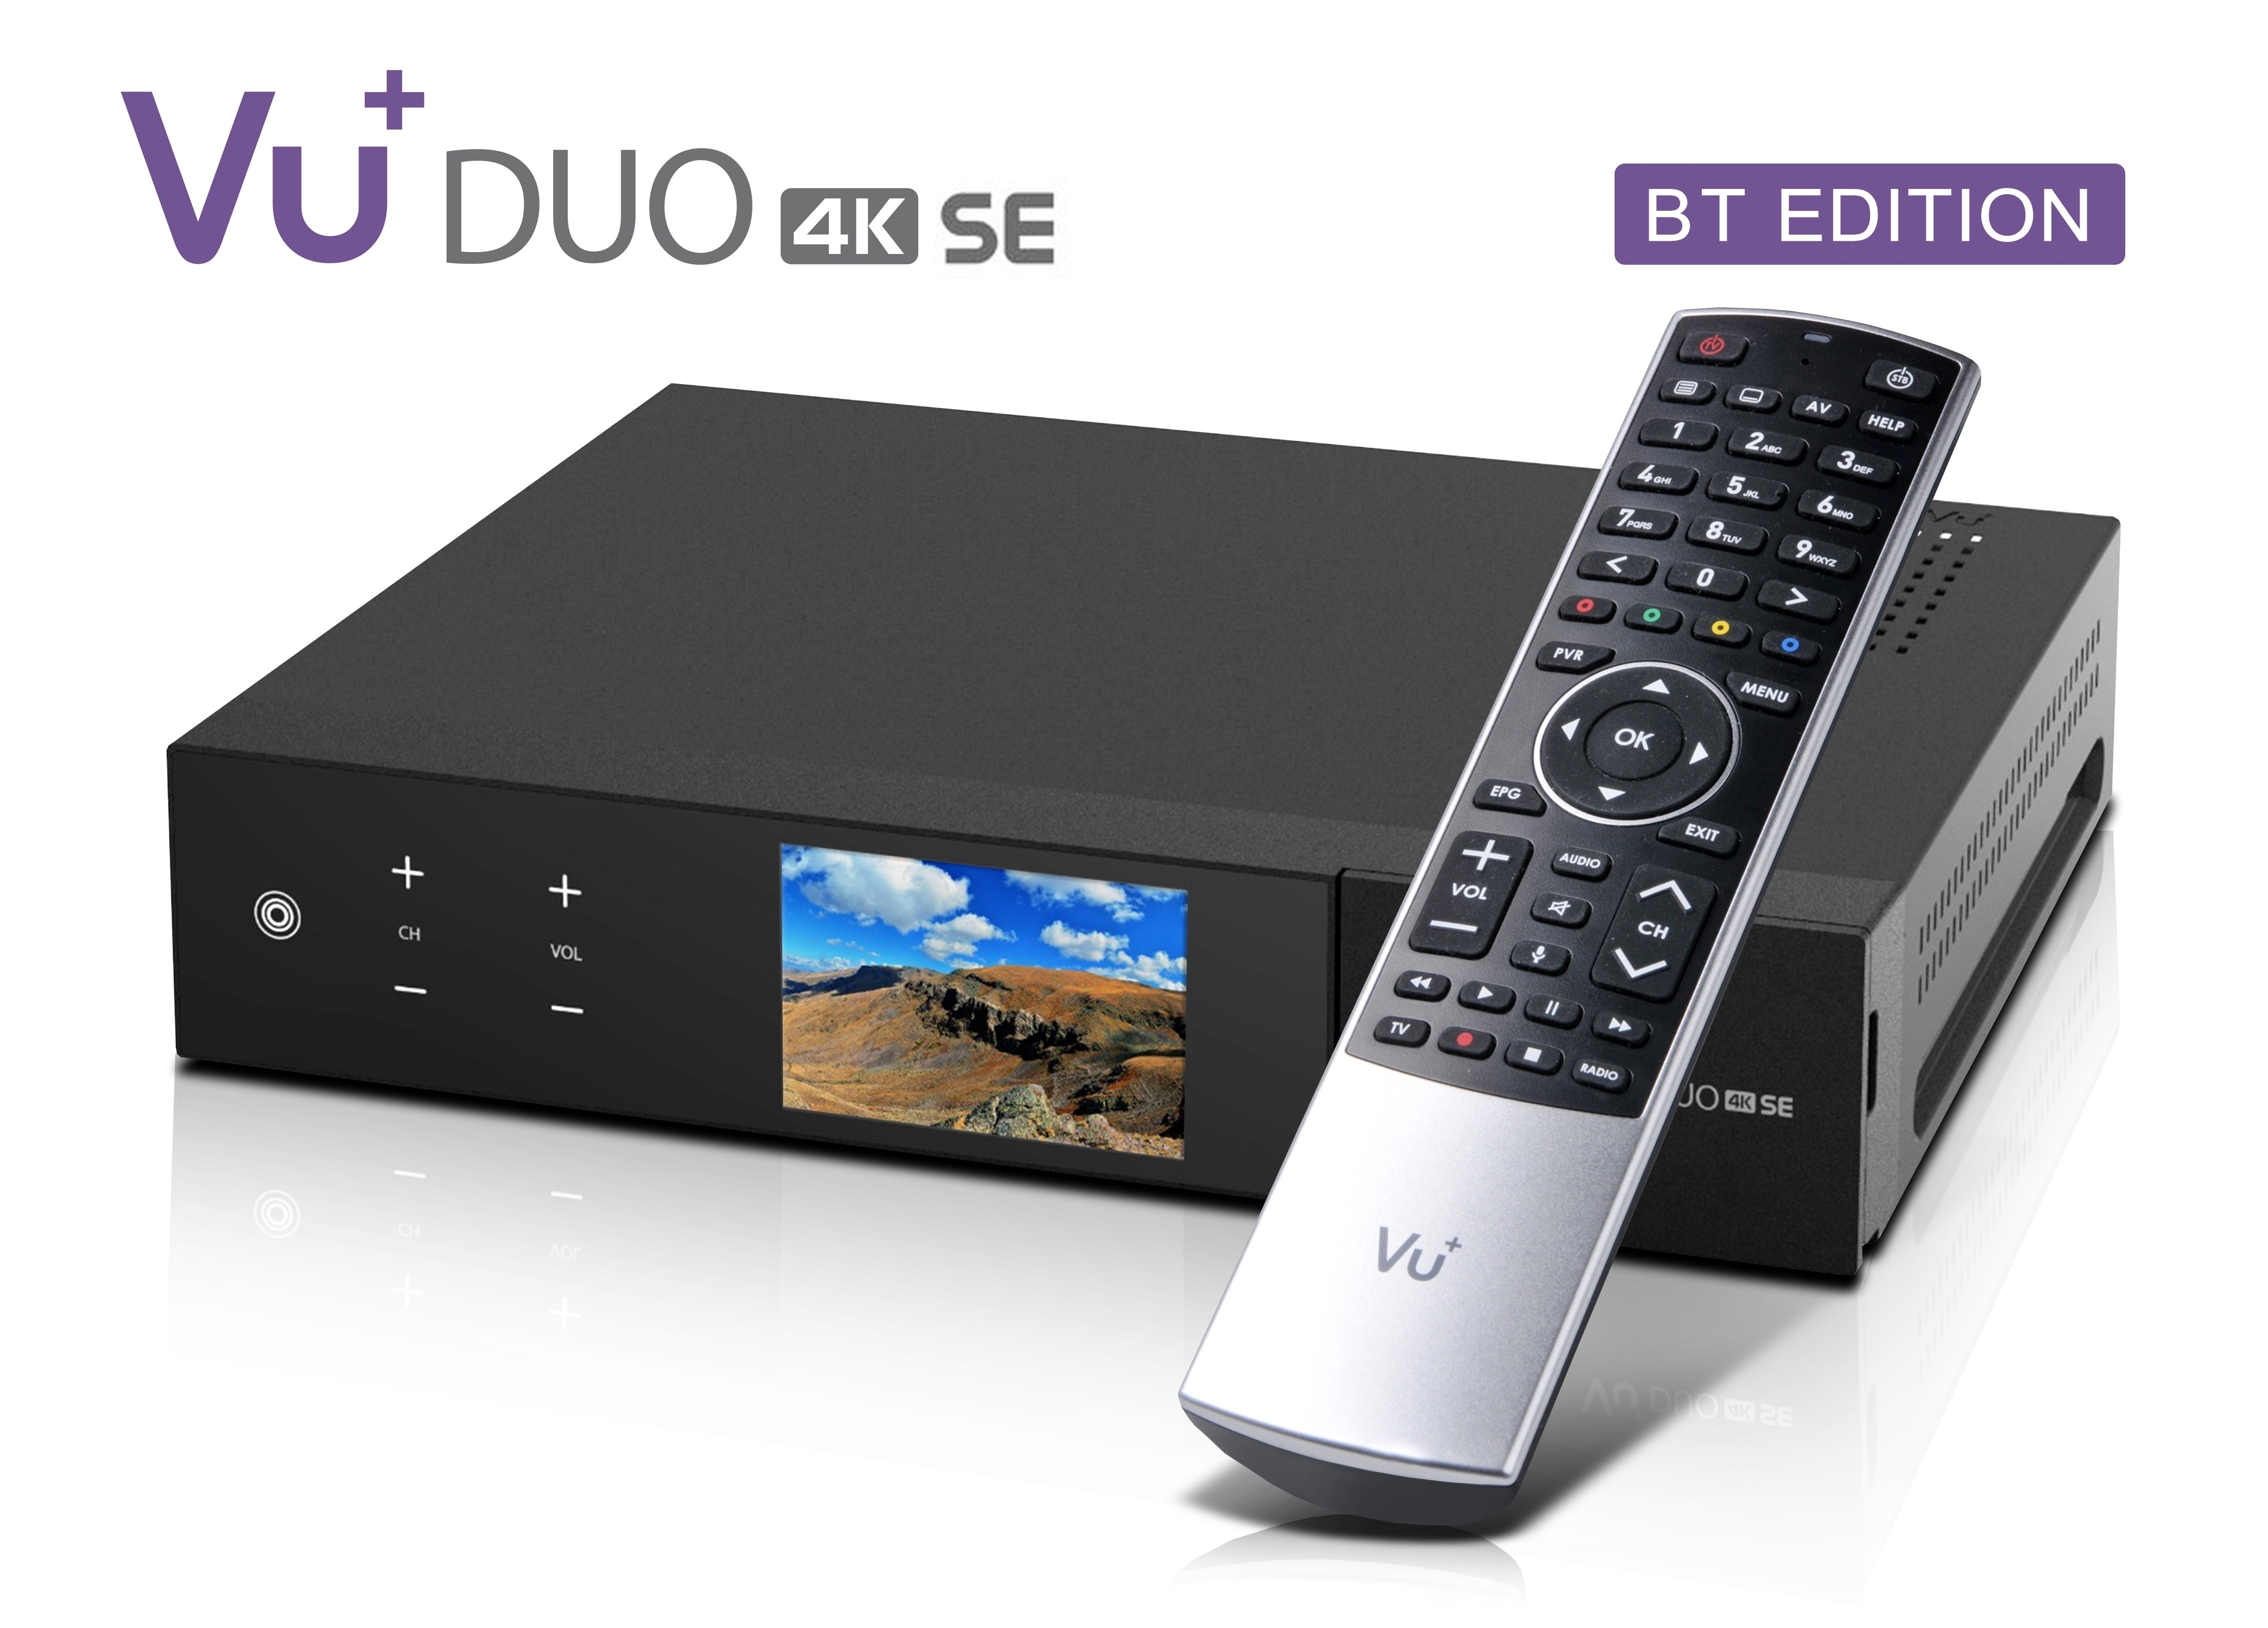 VU+ Duo 4K SE BT 1x DVB-S2X FBC Twin Tuner 500 GB HDD Linux Receiver UHD 2160p